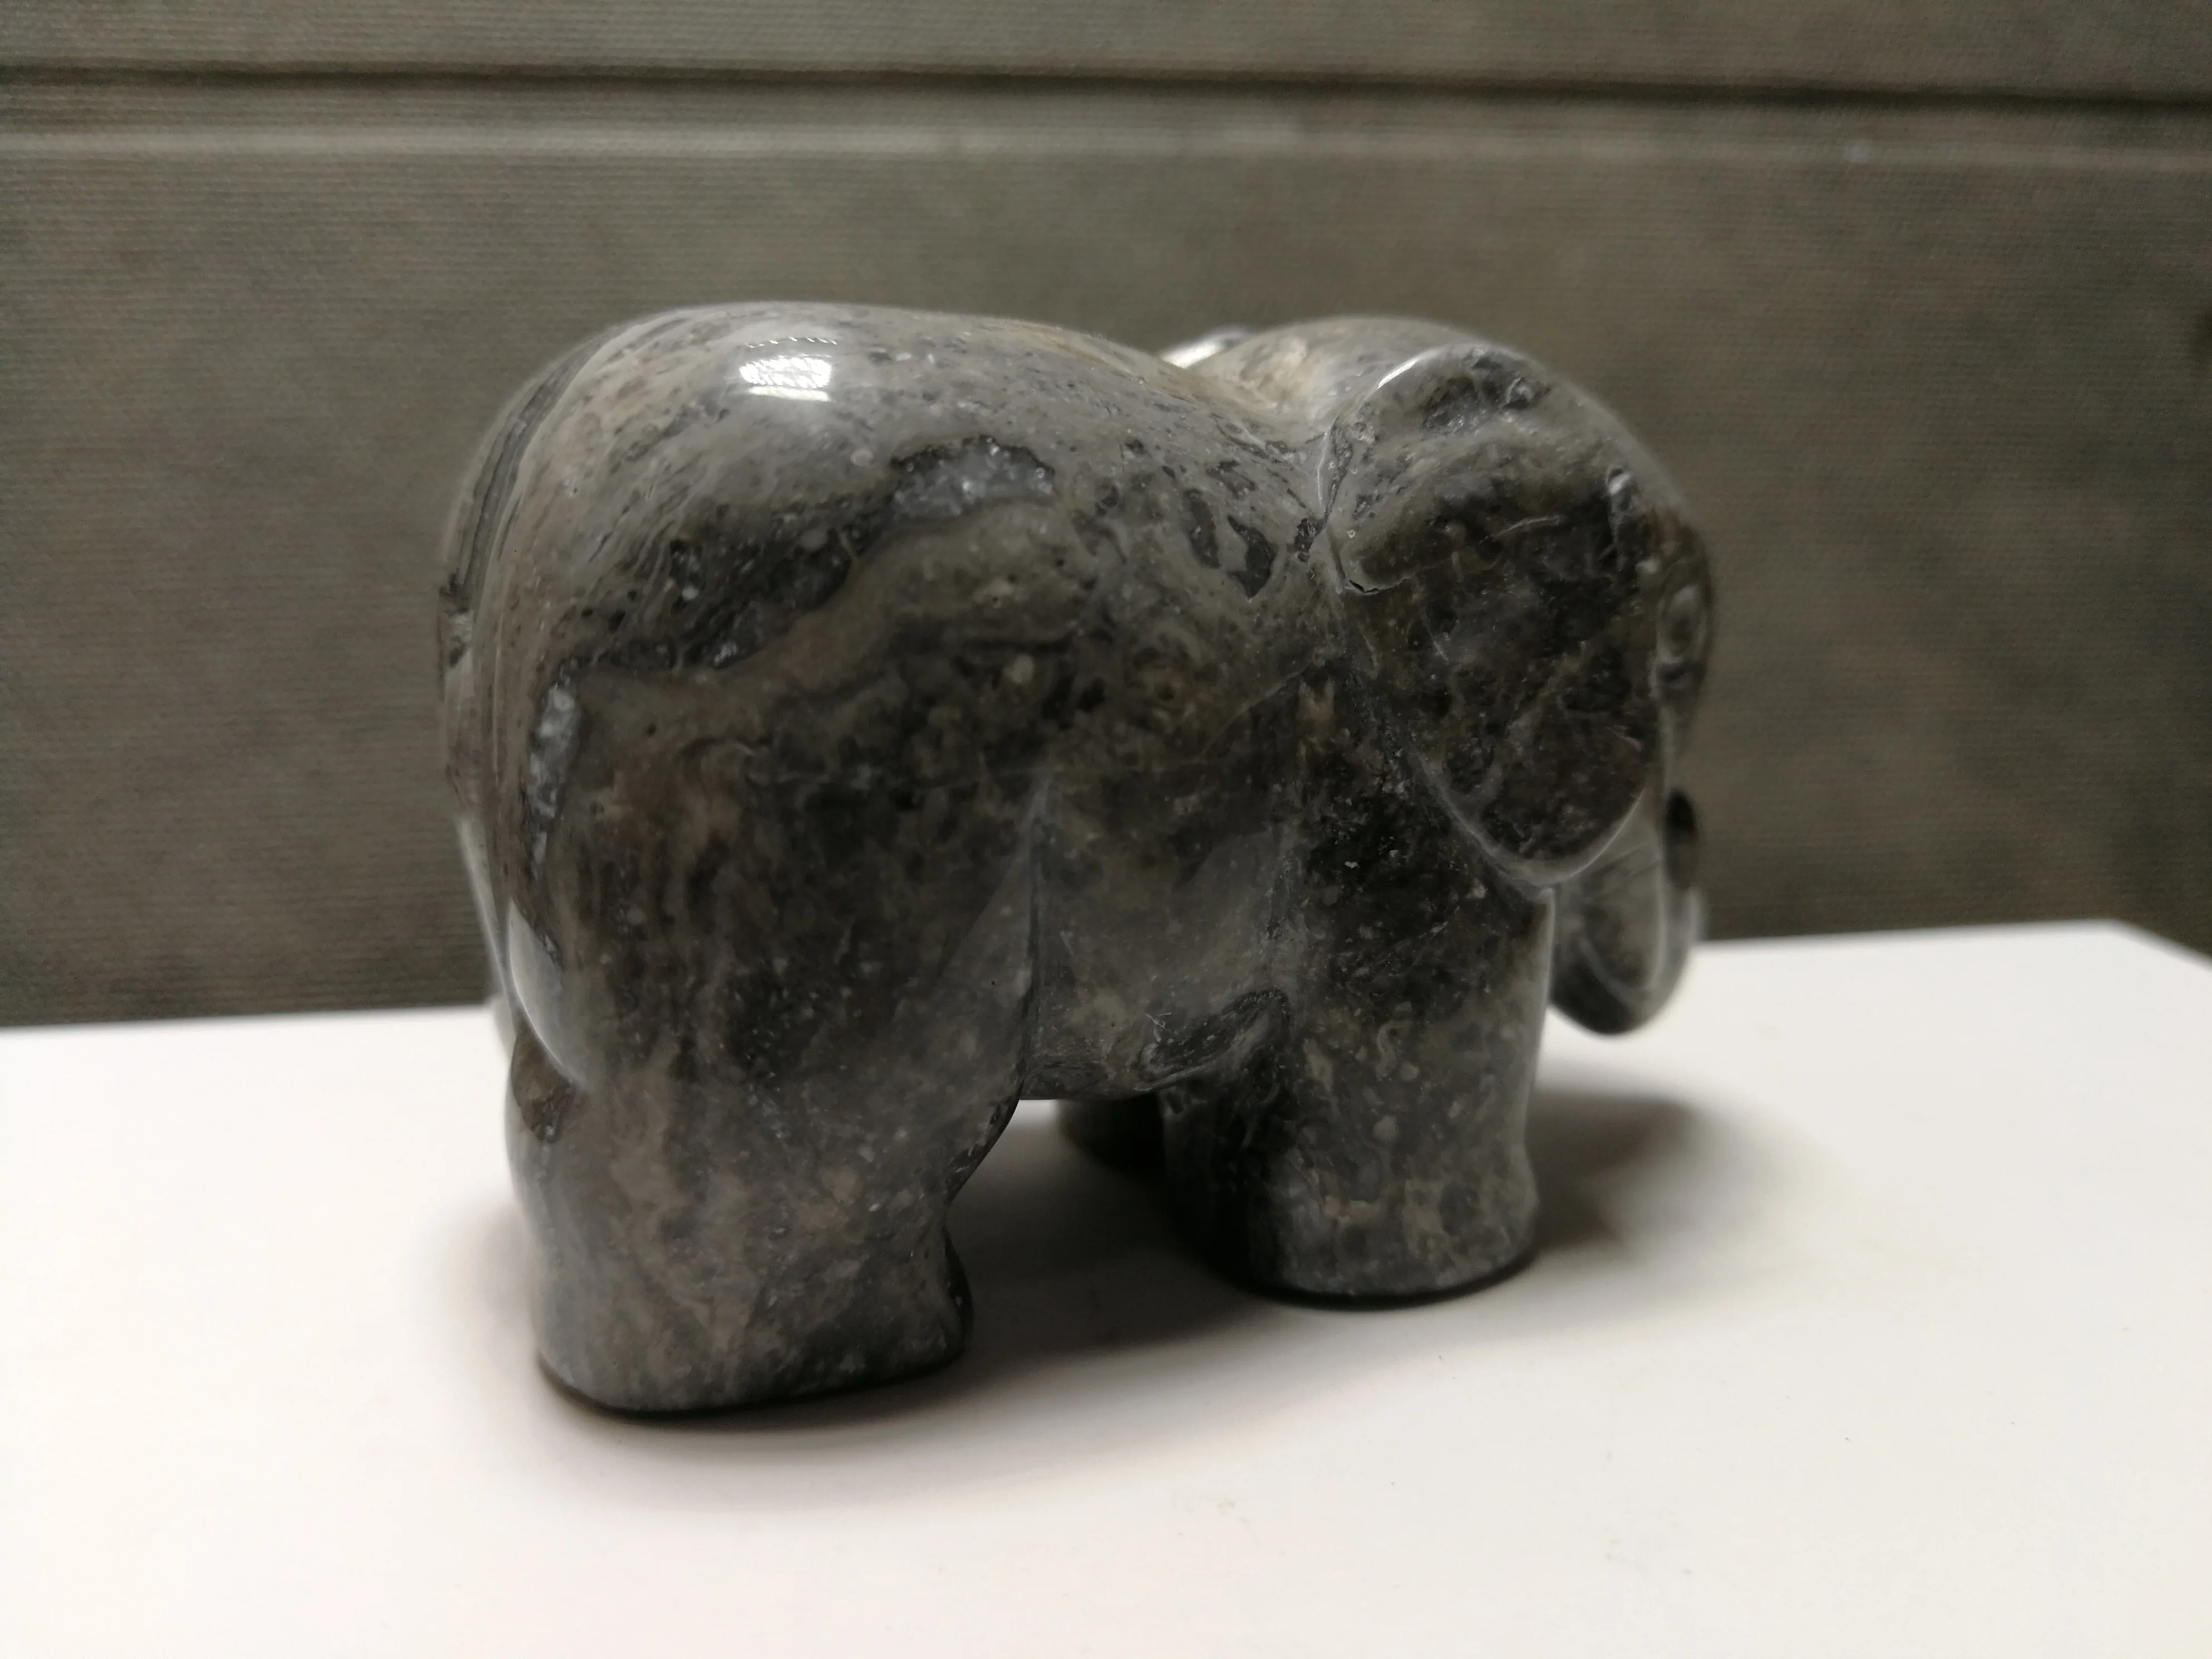 207,2 gNatural серый камень "Зебра", выгравированный вручную слонов, исцеление --- подача заявки на 12 от AliExpress WW